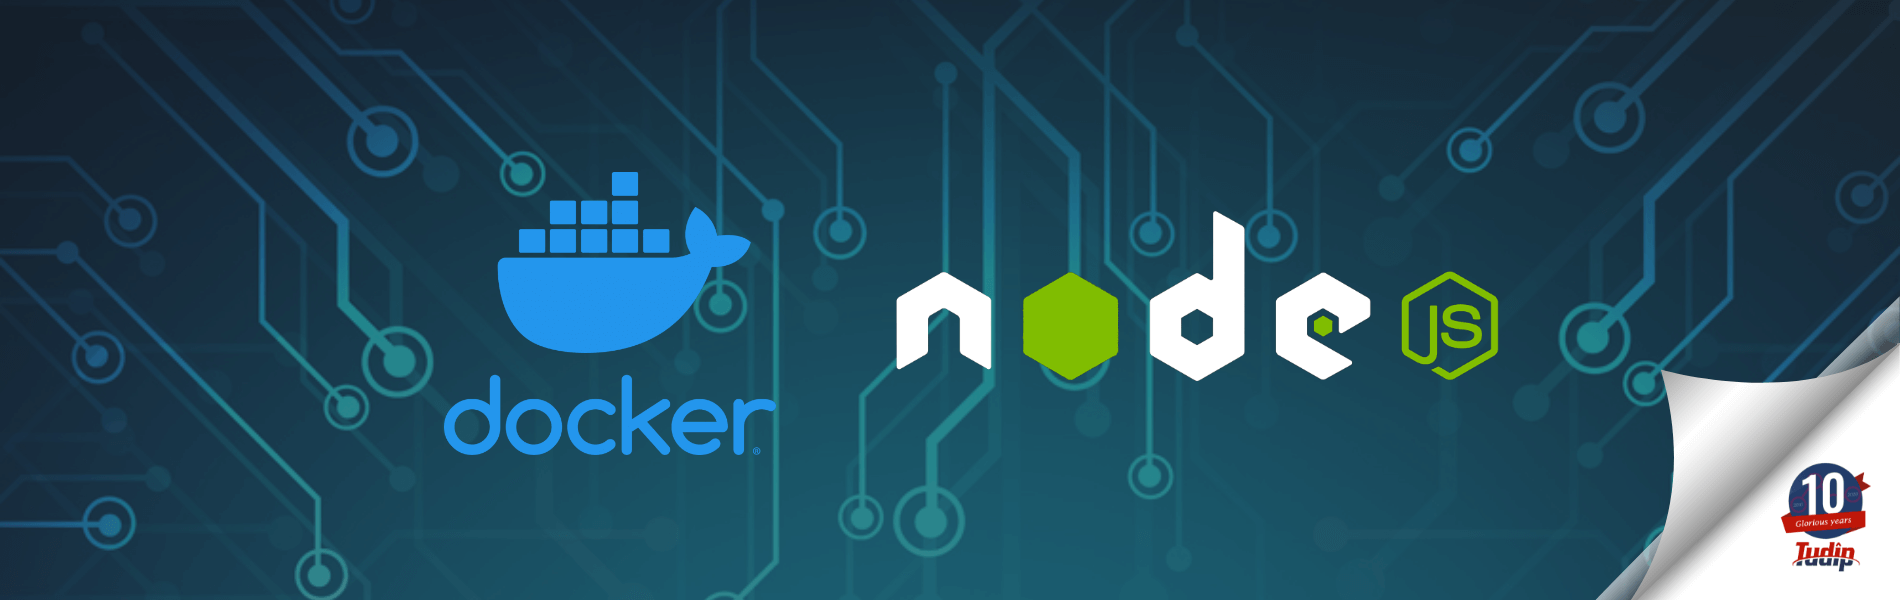 microservice_in_NodeJS_with_Docker_changed_website